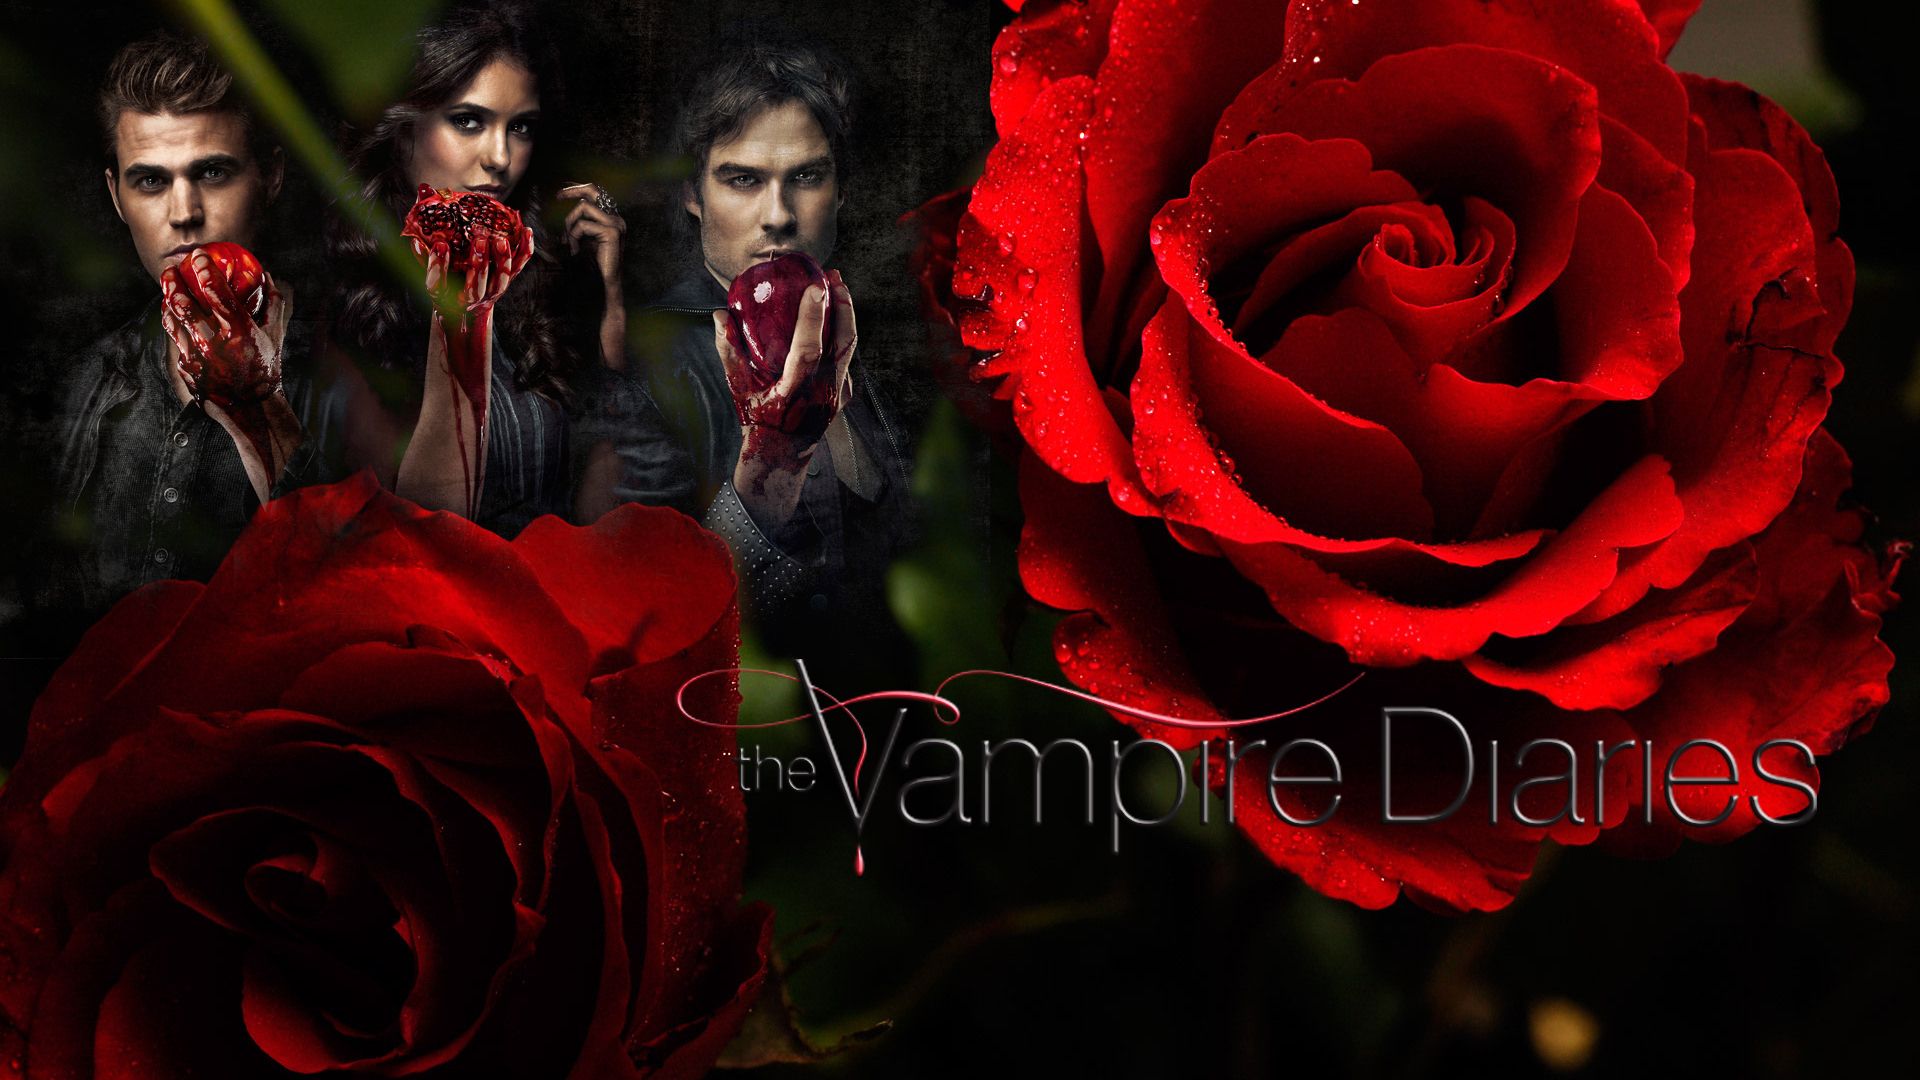 The Vampire Diaries Wallpaper. Vampire